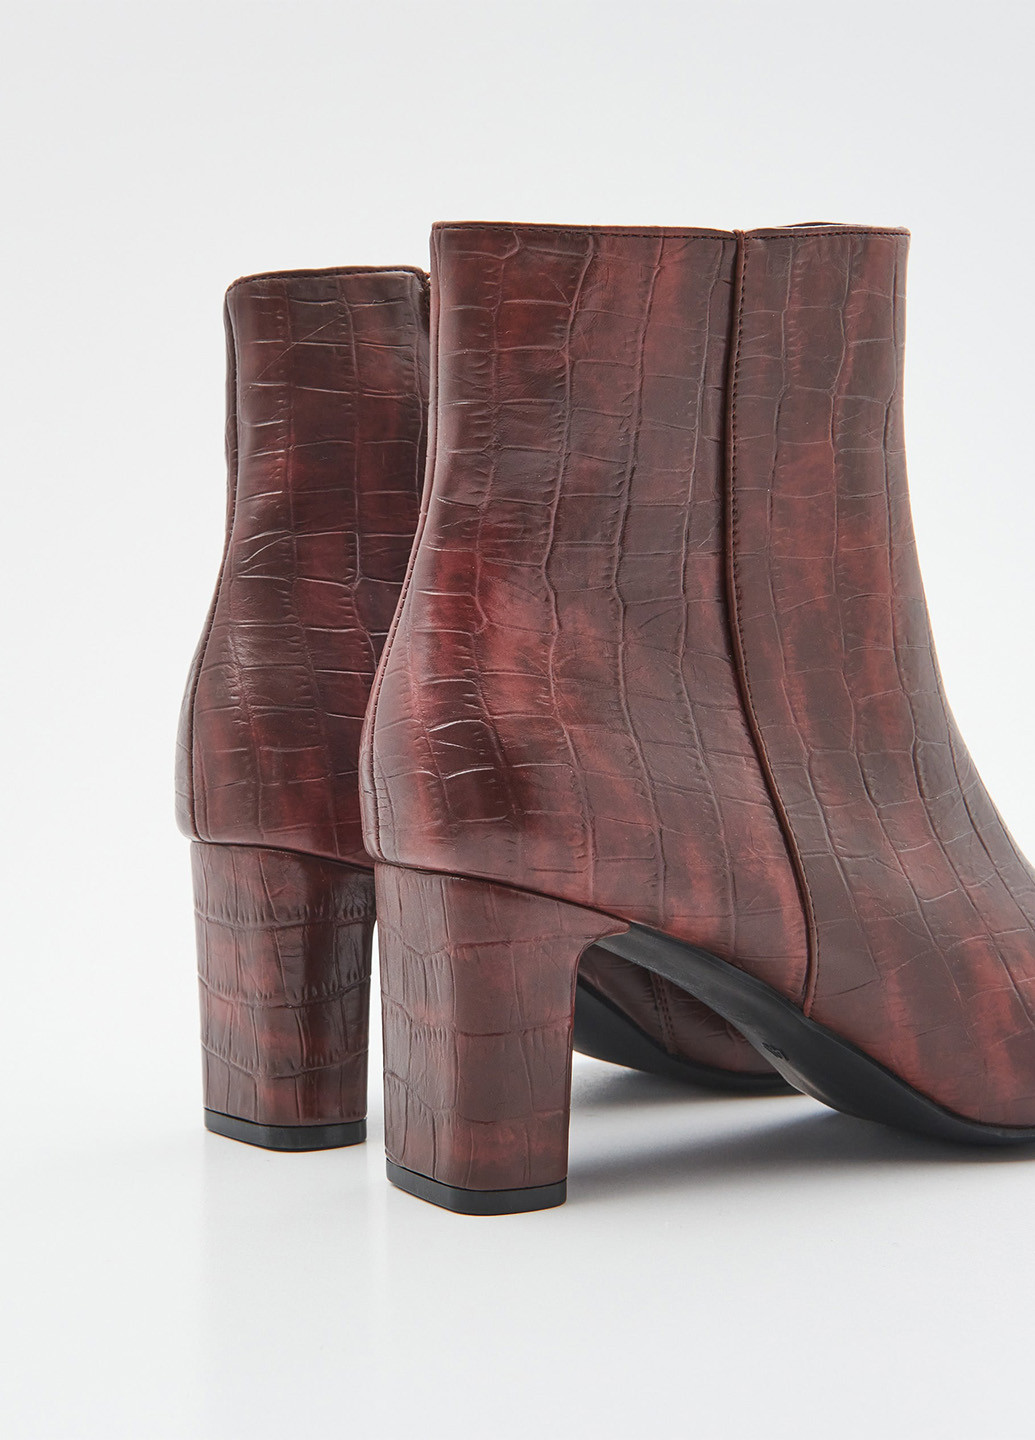 Осенние ботинки Sinsay лаковые из искусственной кожи